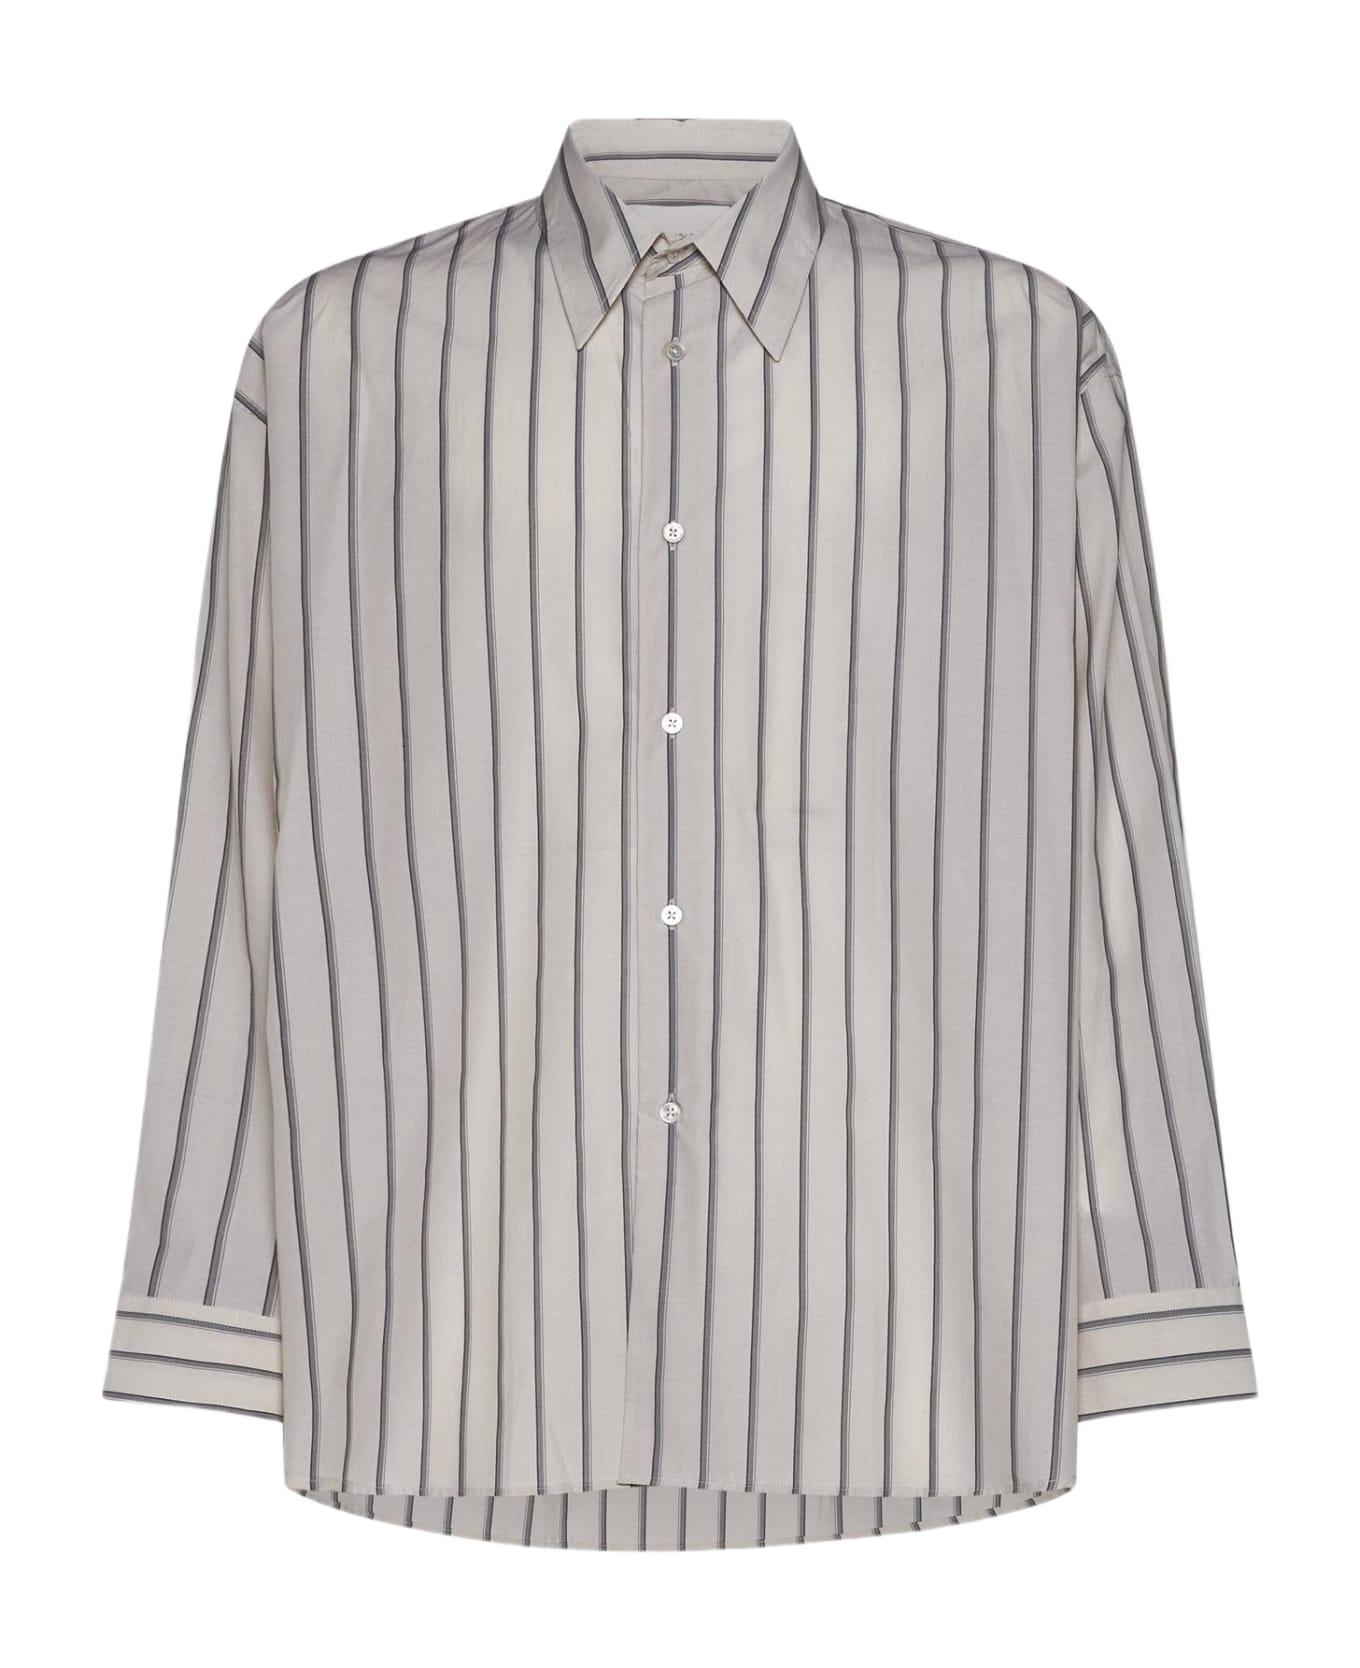 Studio Nicholson Loche Pinstriped Cotton Shirt - BEIGE シャツ